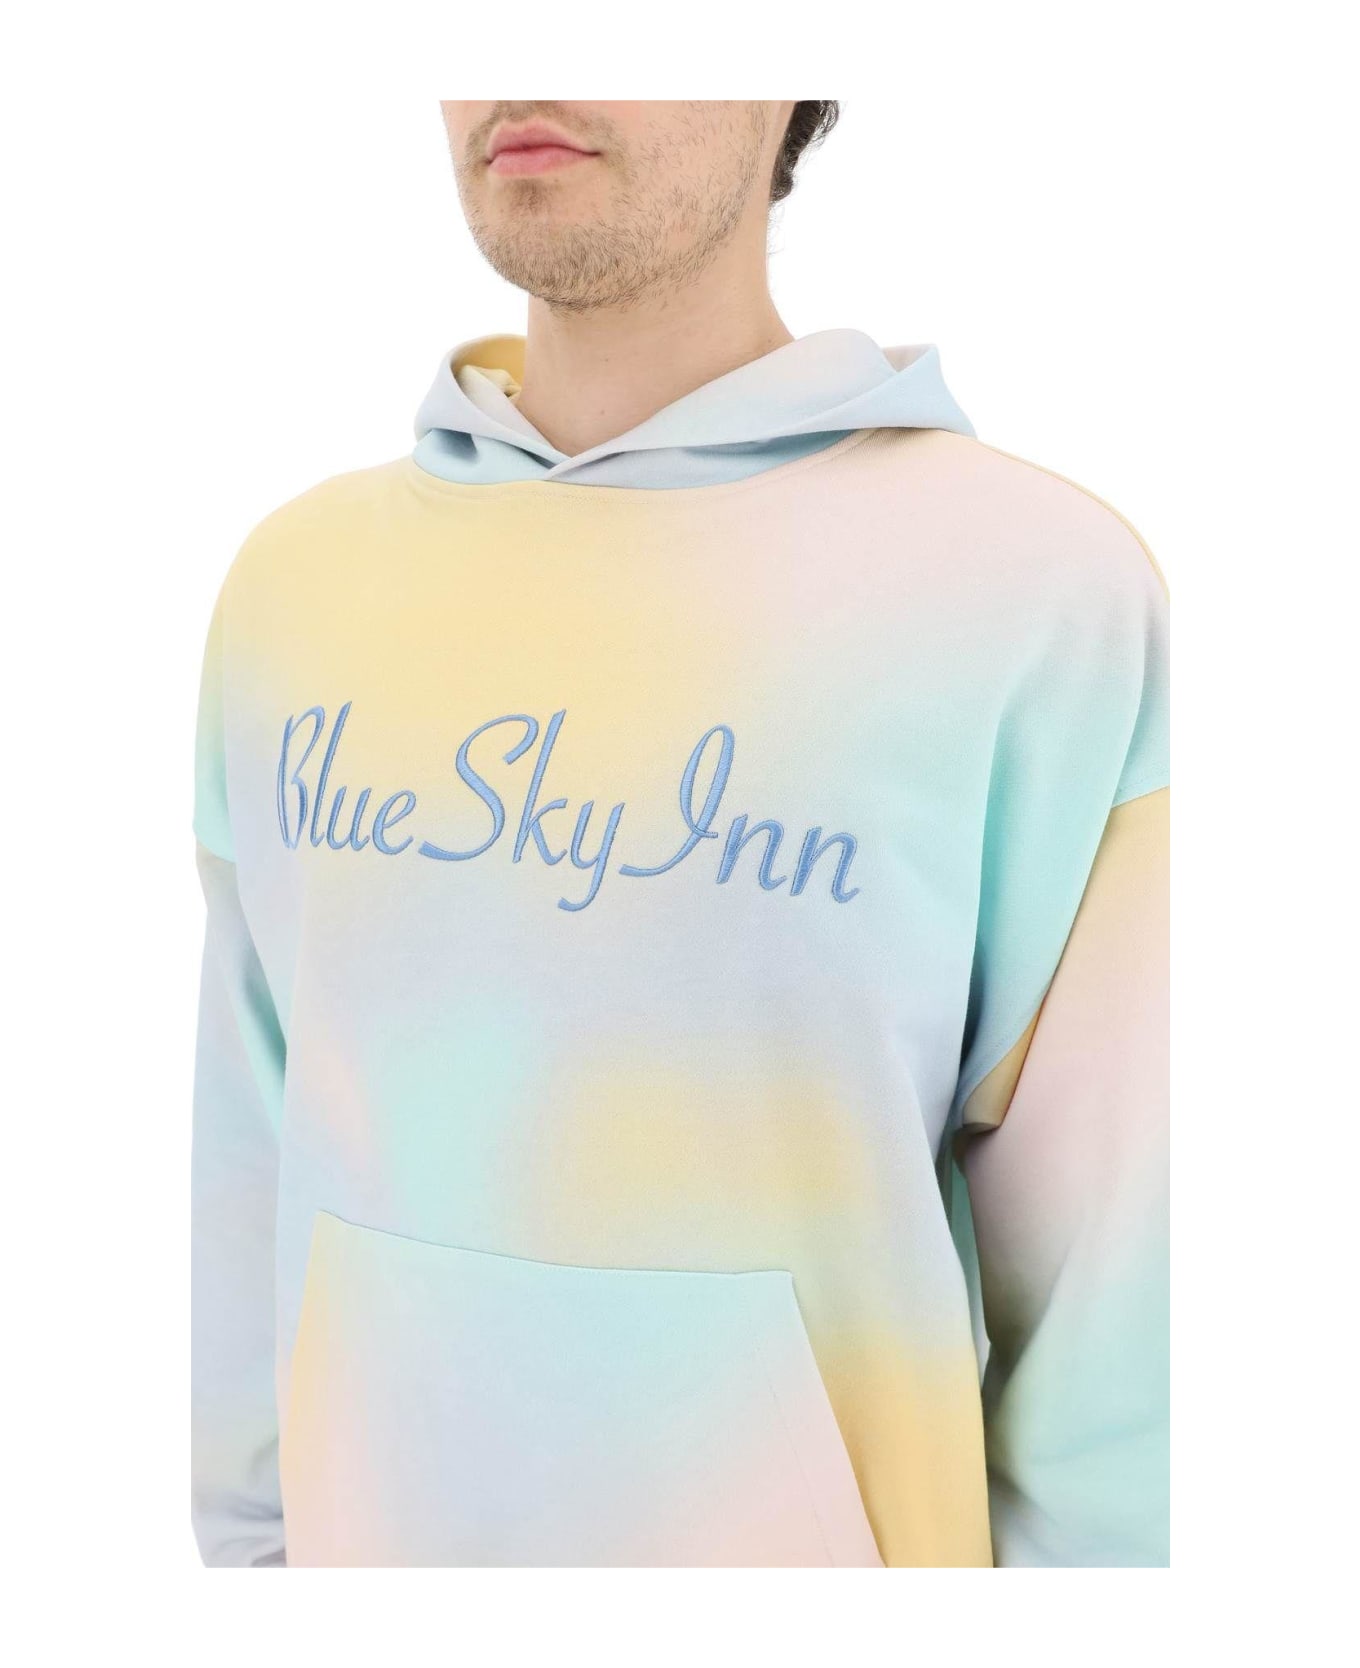 Blue Sky Inn Tie-dye Logo Hoodie - Multicolor